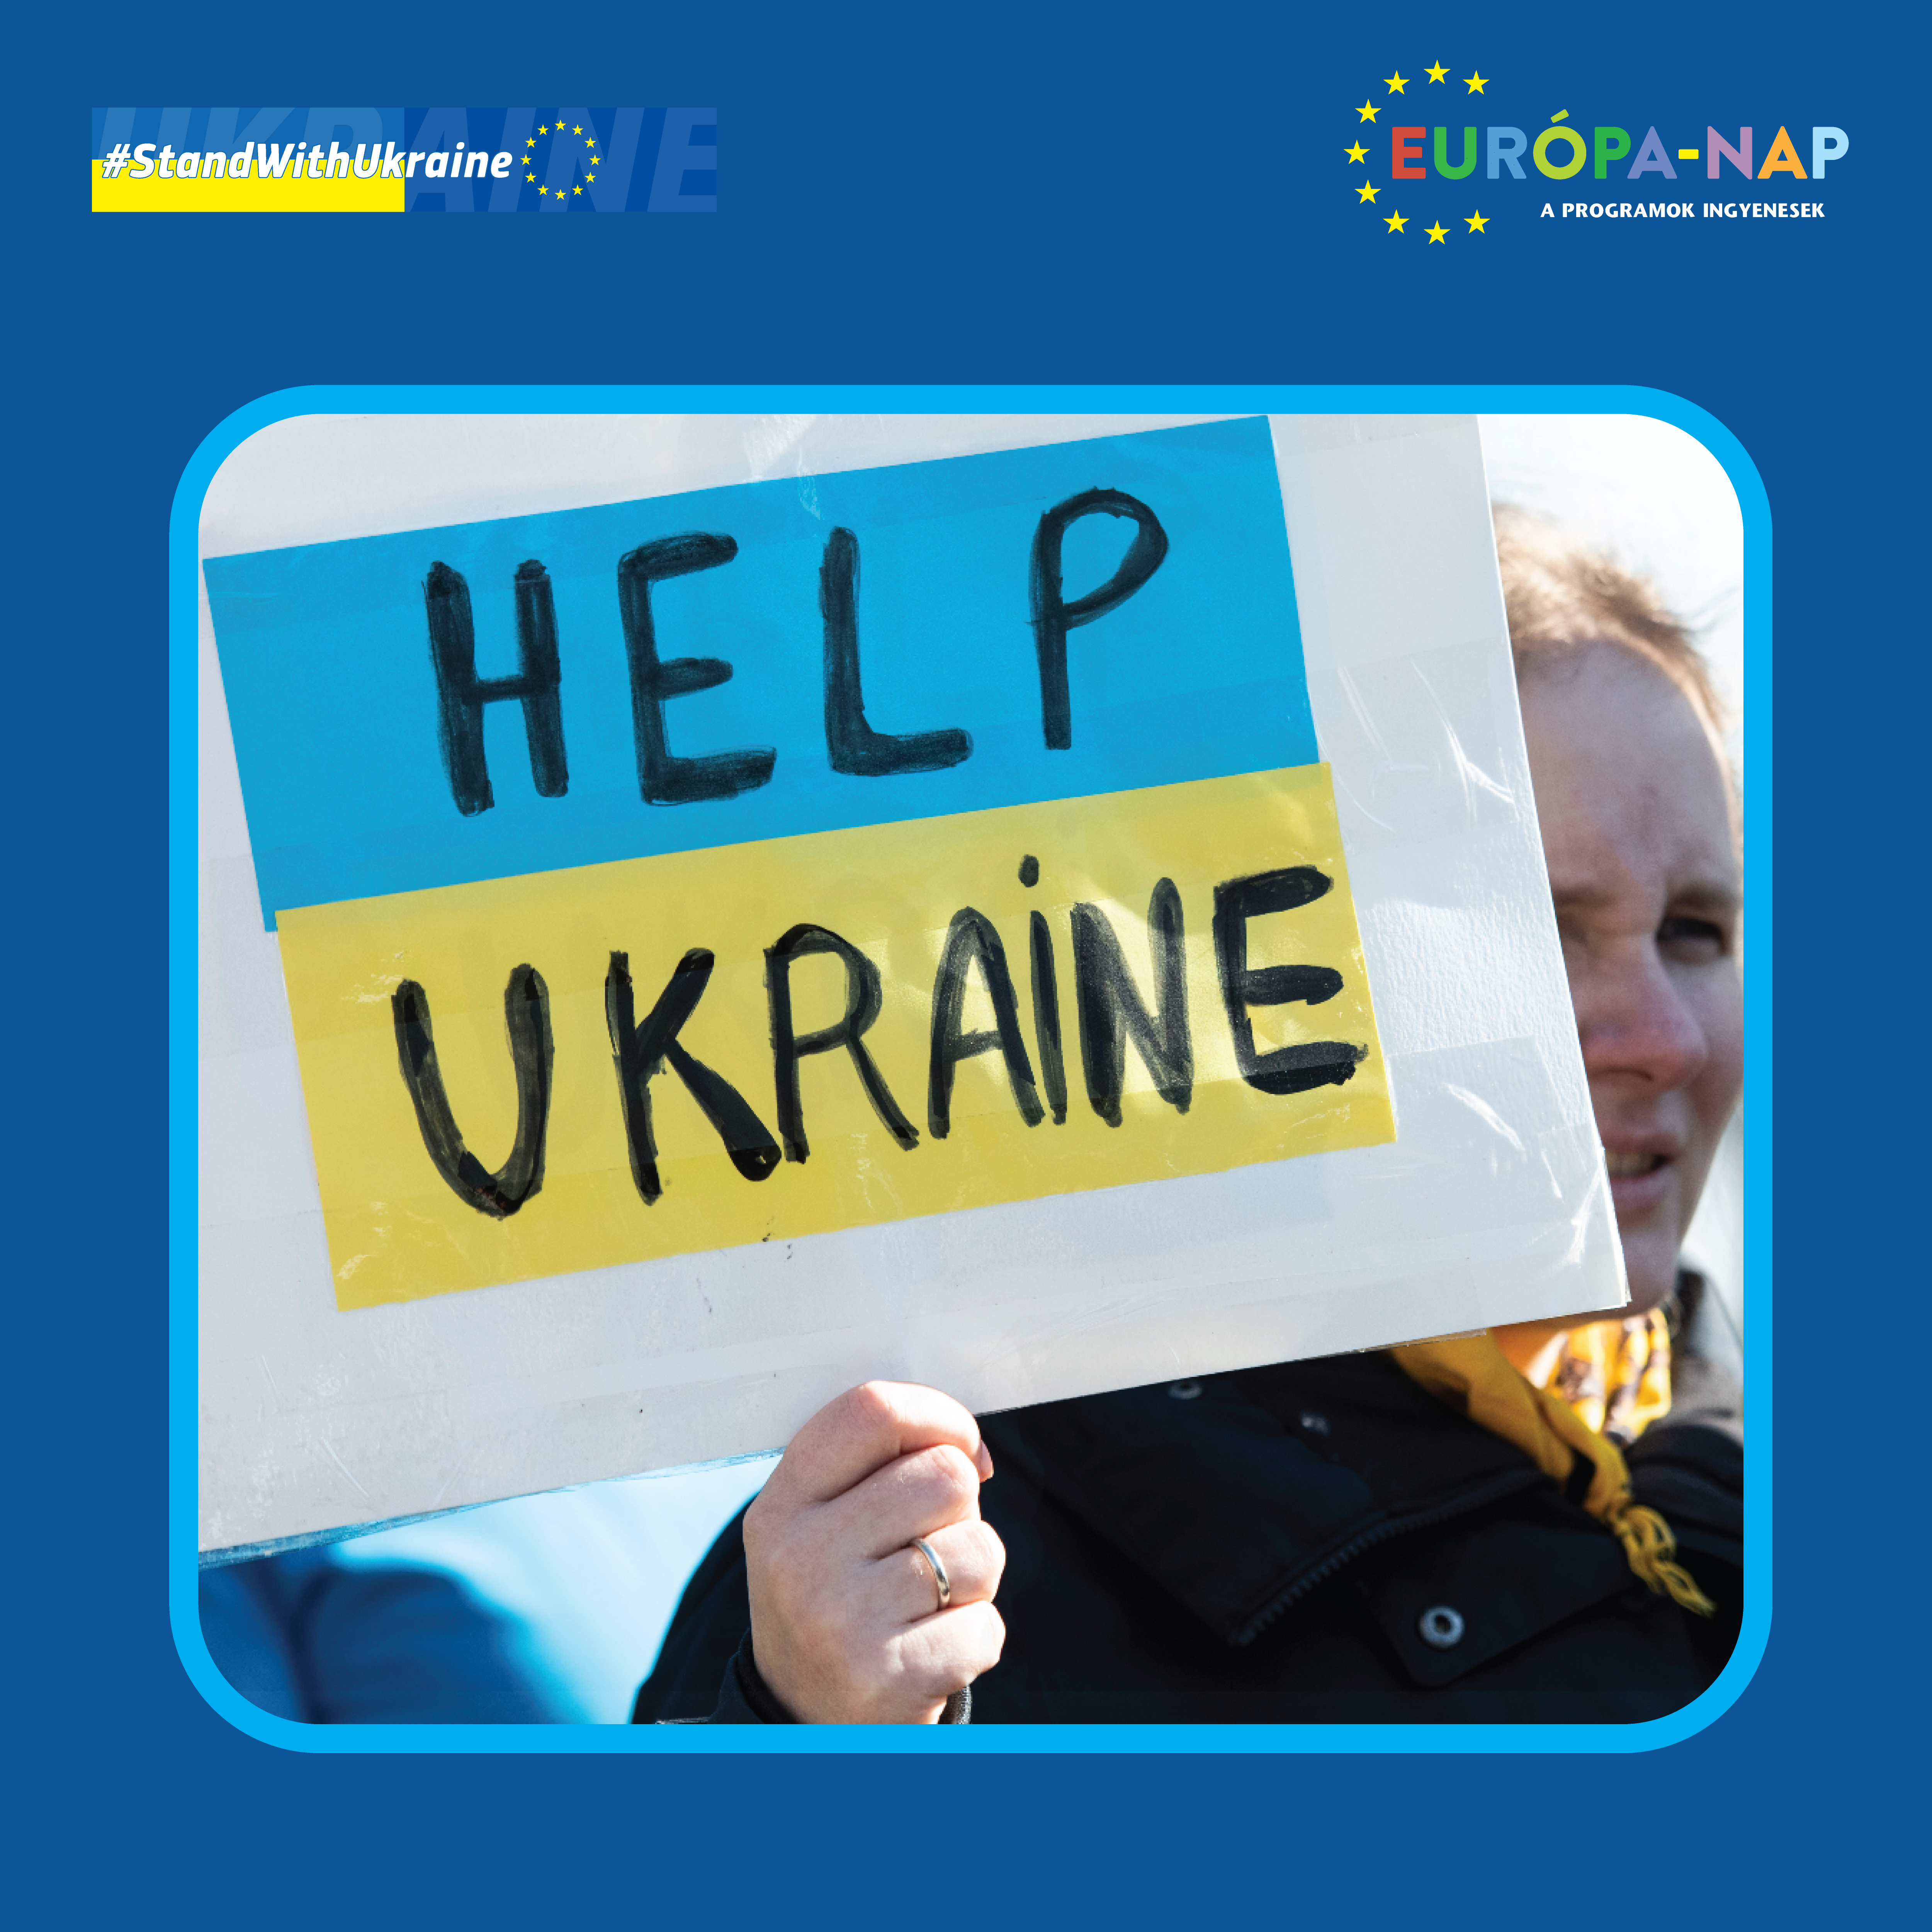 ...és az eseményen szolidaritásunkat is kifejezzük Ukrajnával.